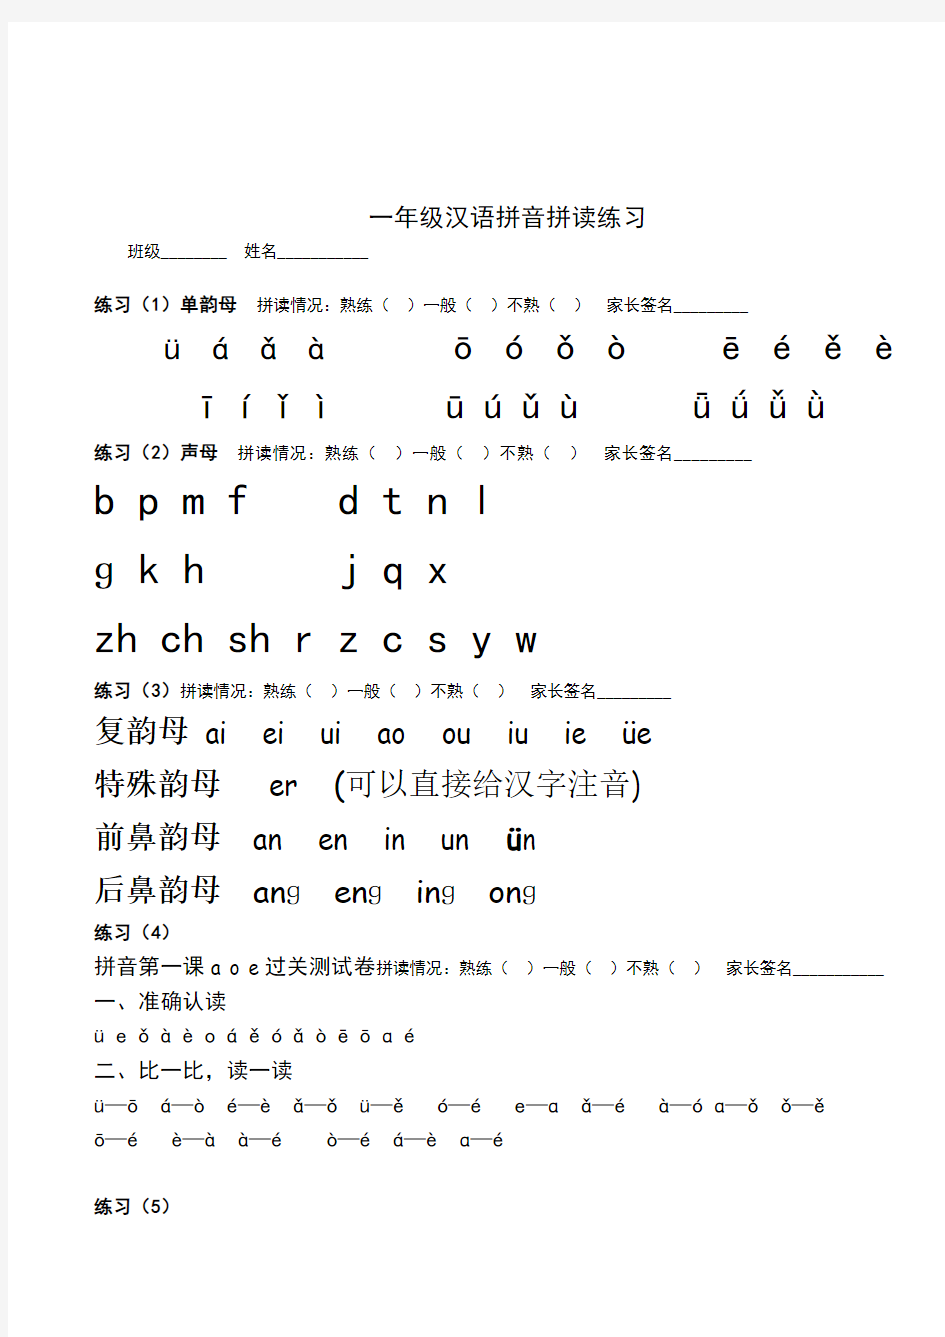 人教版2017小学一年级(上册)语文汉语拼音拼读练习题